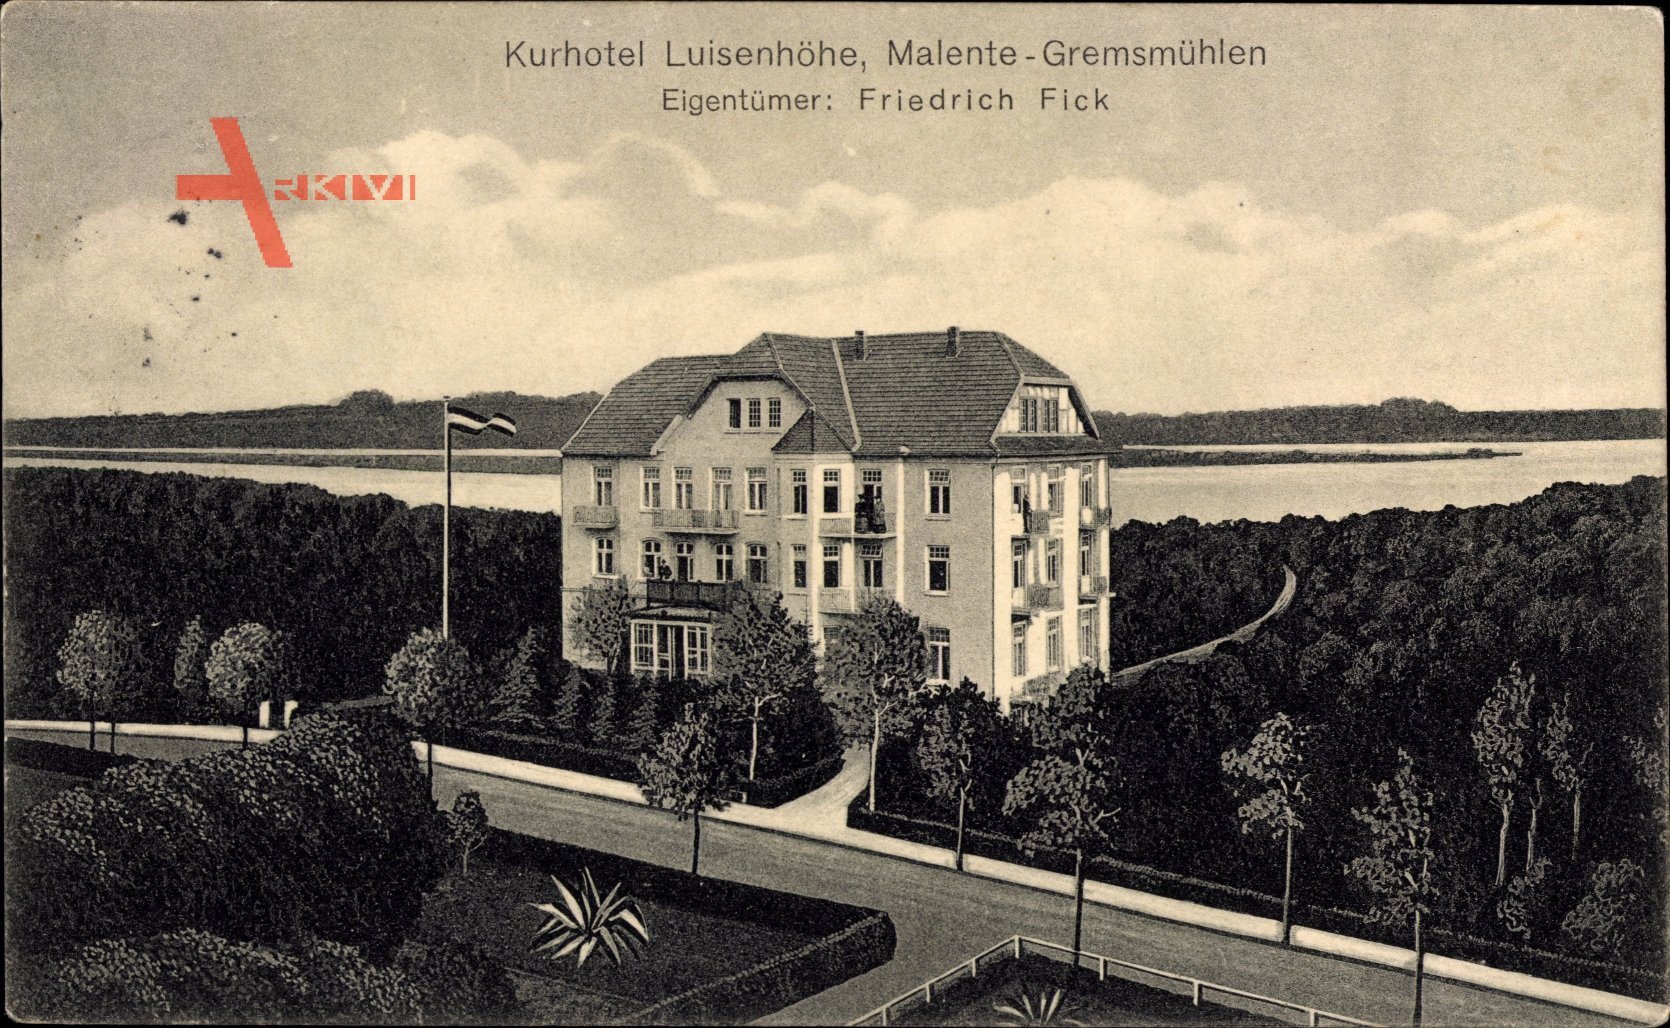 Malente Gremsmühlen in Ostholstein, Kurhotel Luisenhöhe, Friedrich Fick